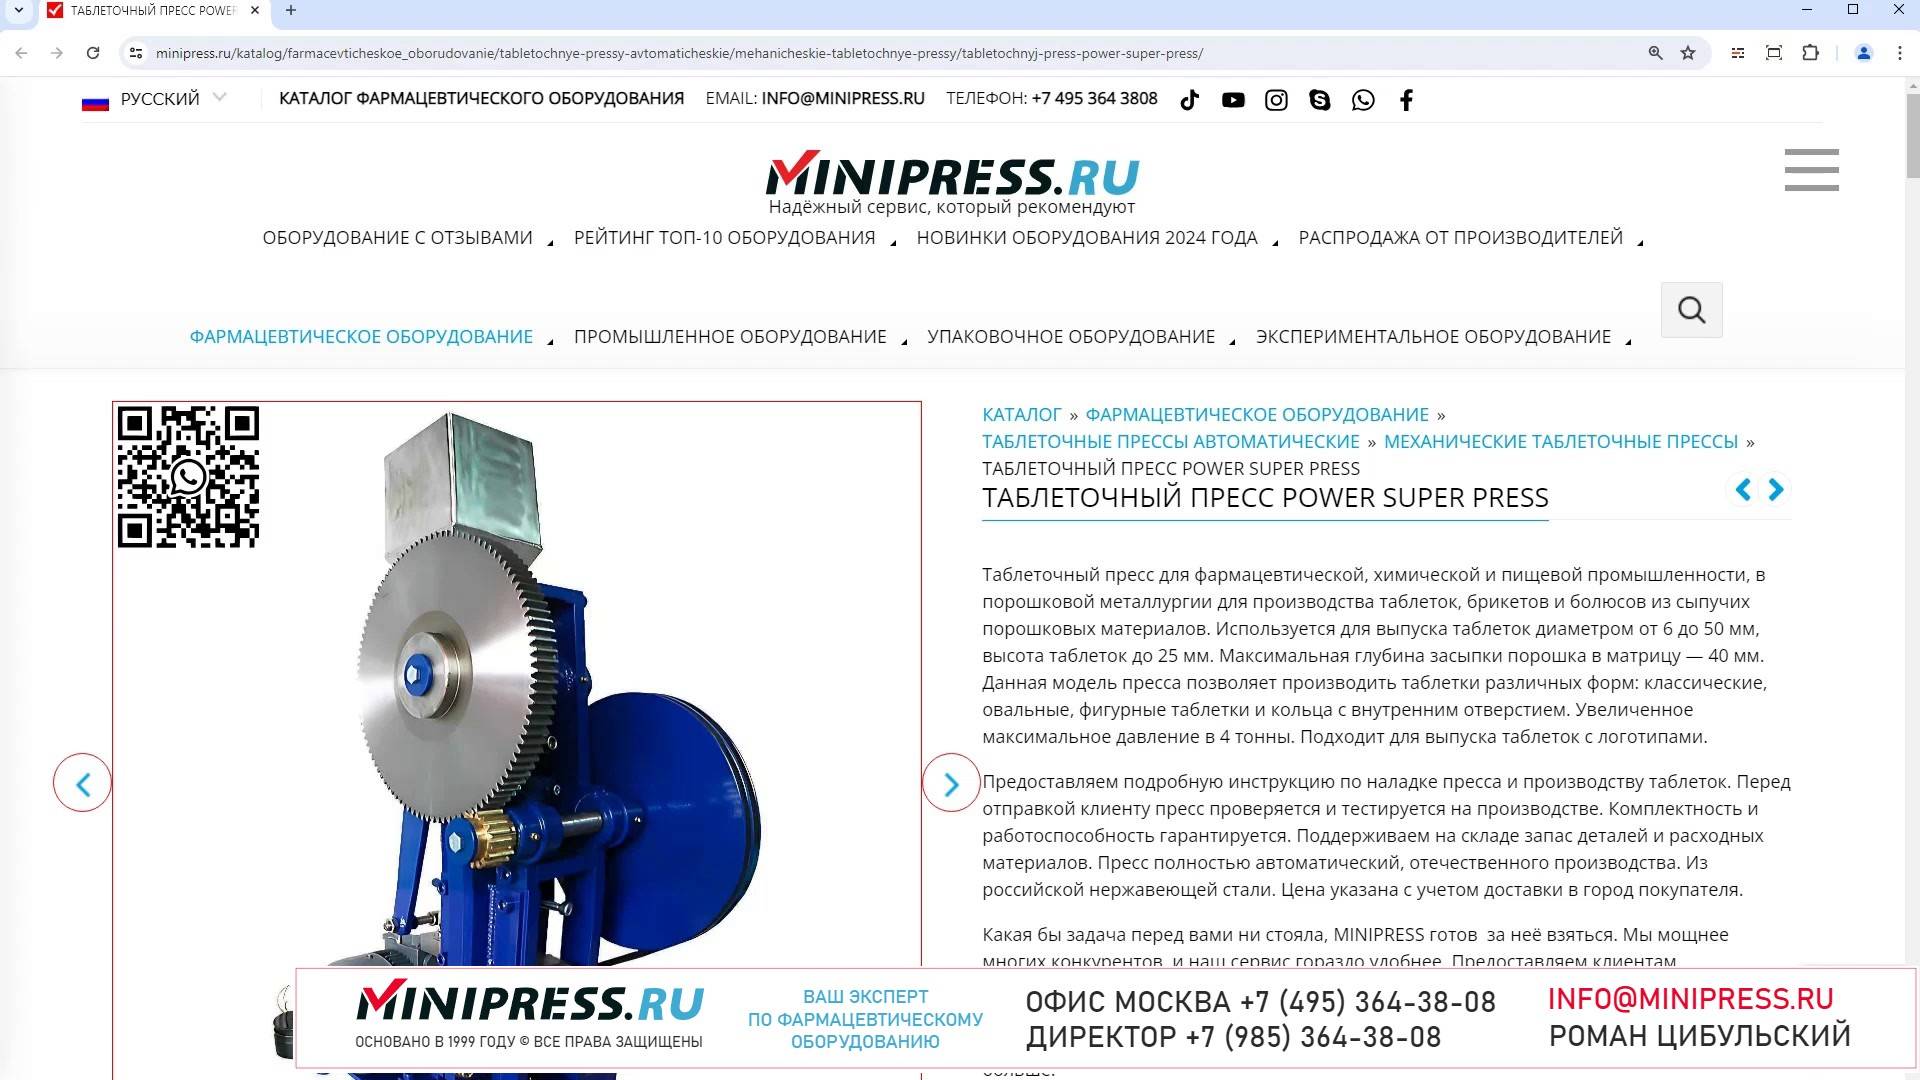 Minipress.ru Таблеточный пресс POWER SUPER PRESS